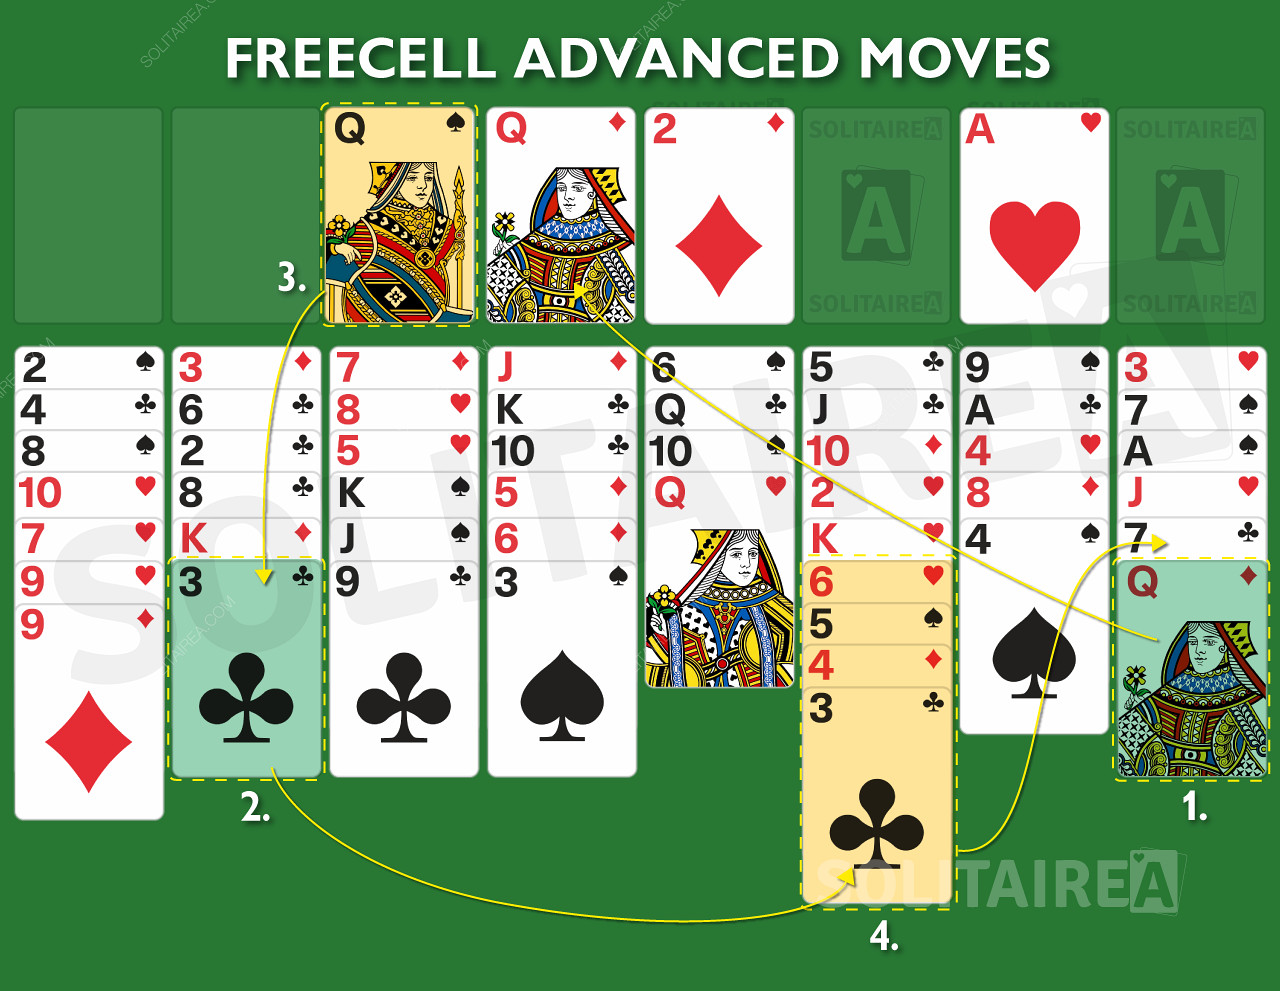 Mouvements et stratégie avancés pour ce jeu de cartes